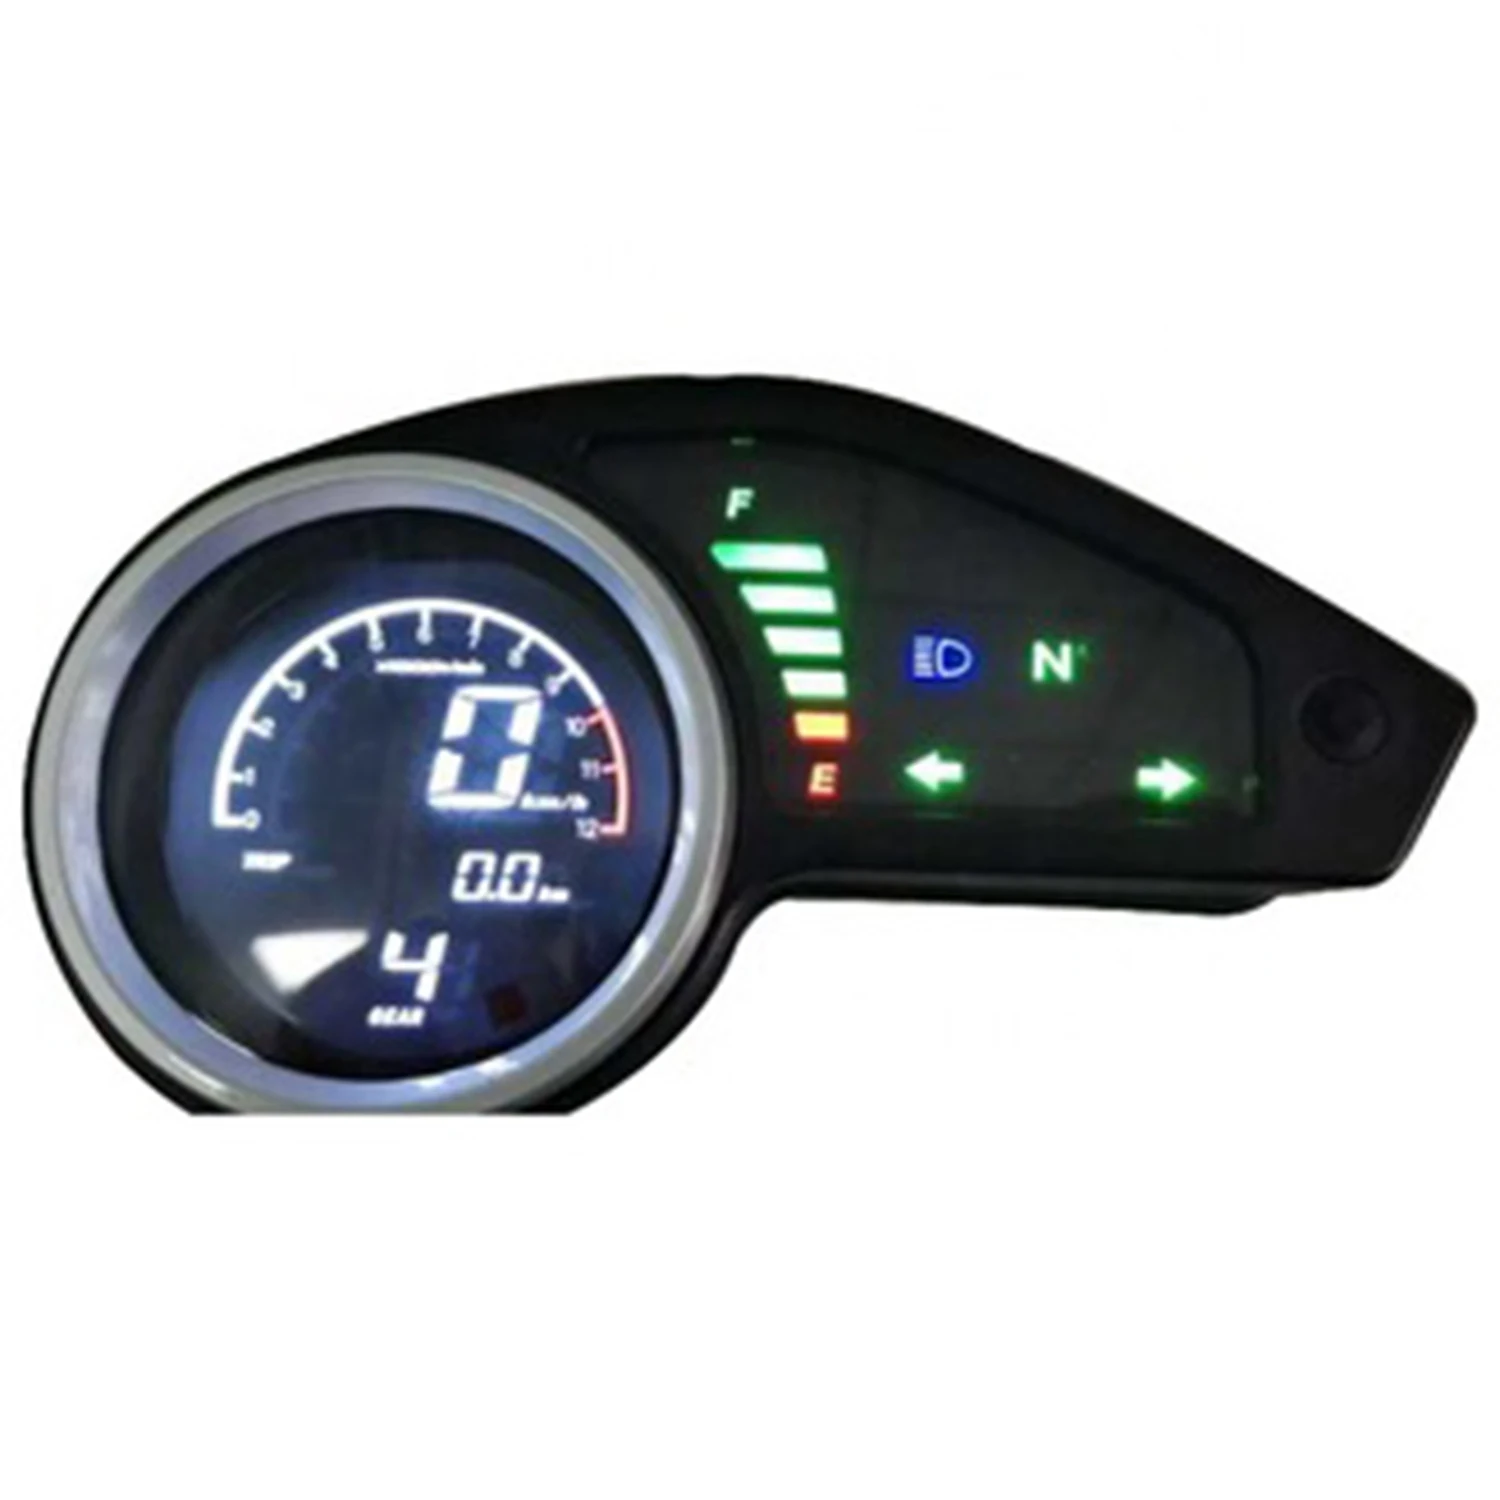 

Universal Digital Motorcycle Odometer LCD Meter Speedometer Tachometer Gauges with Night Light